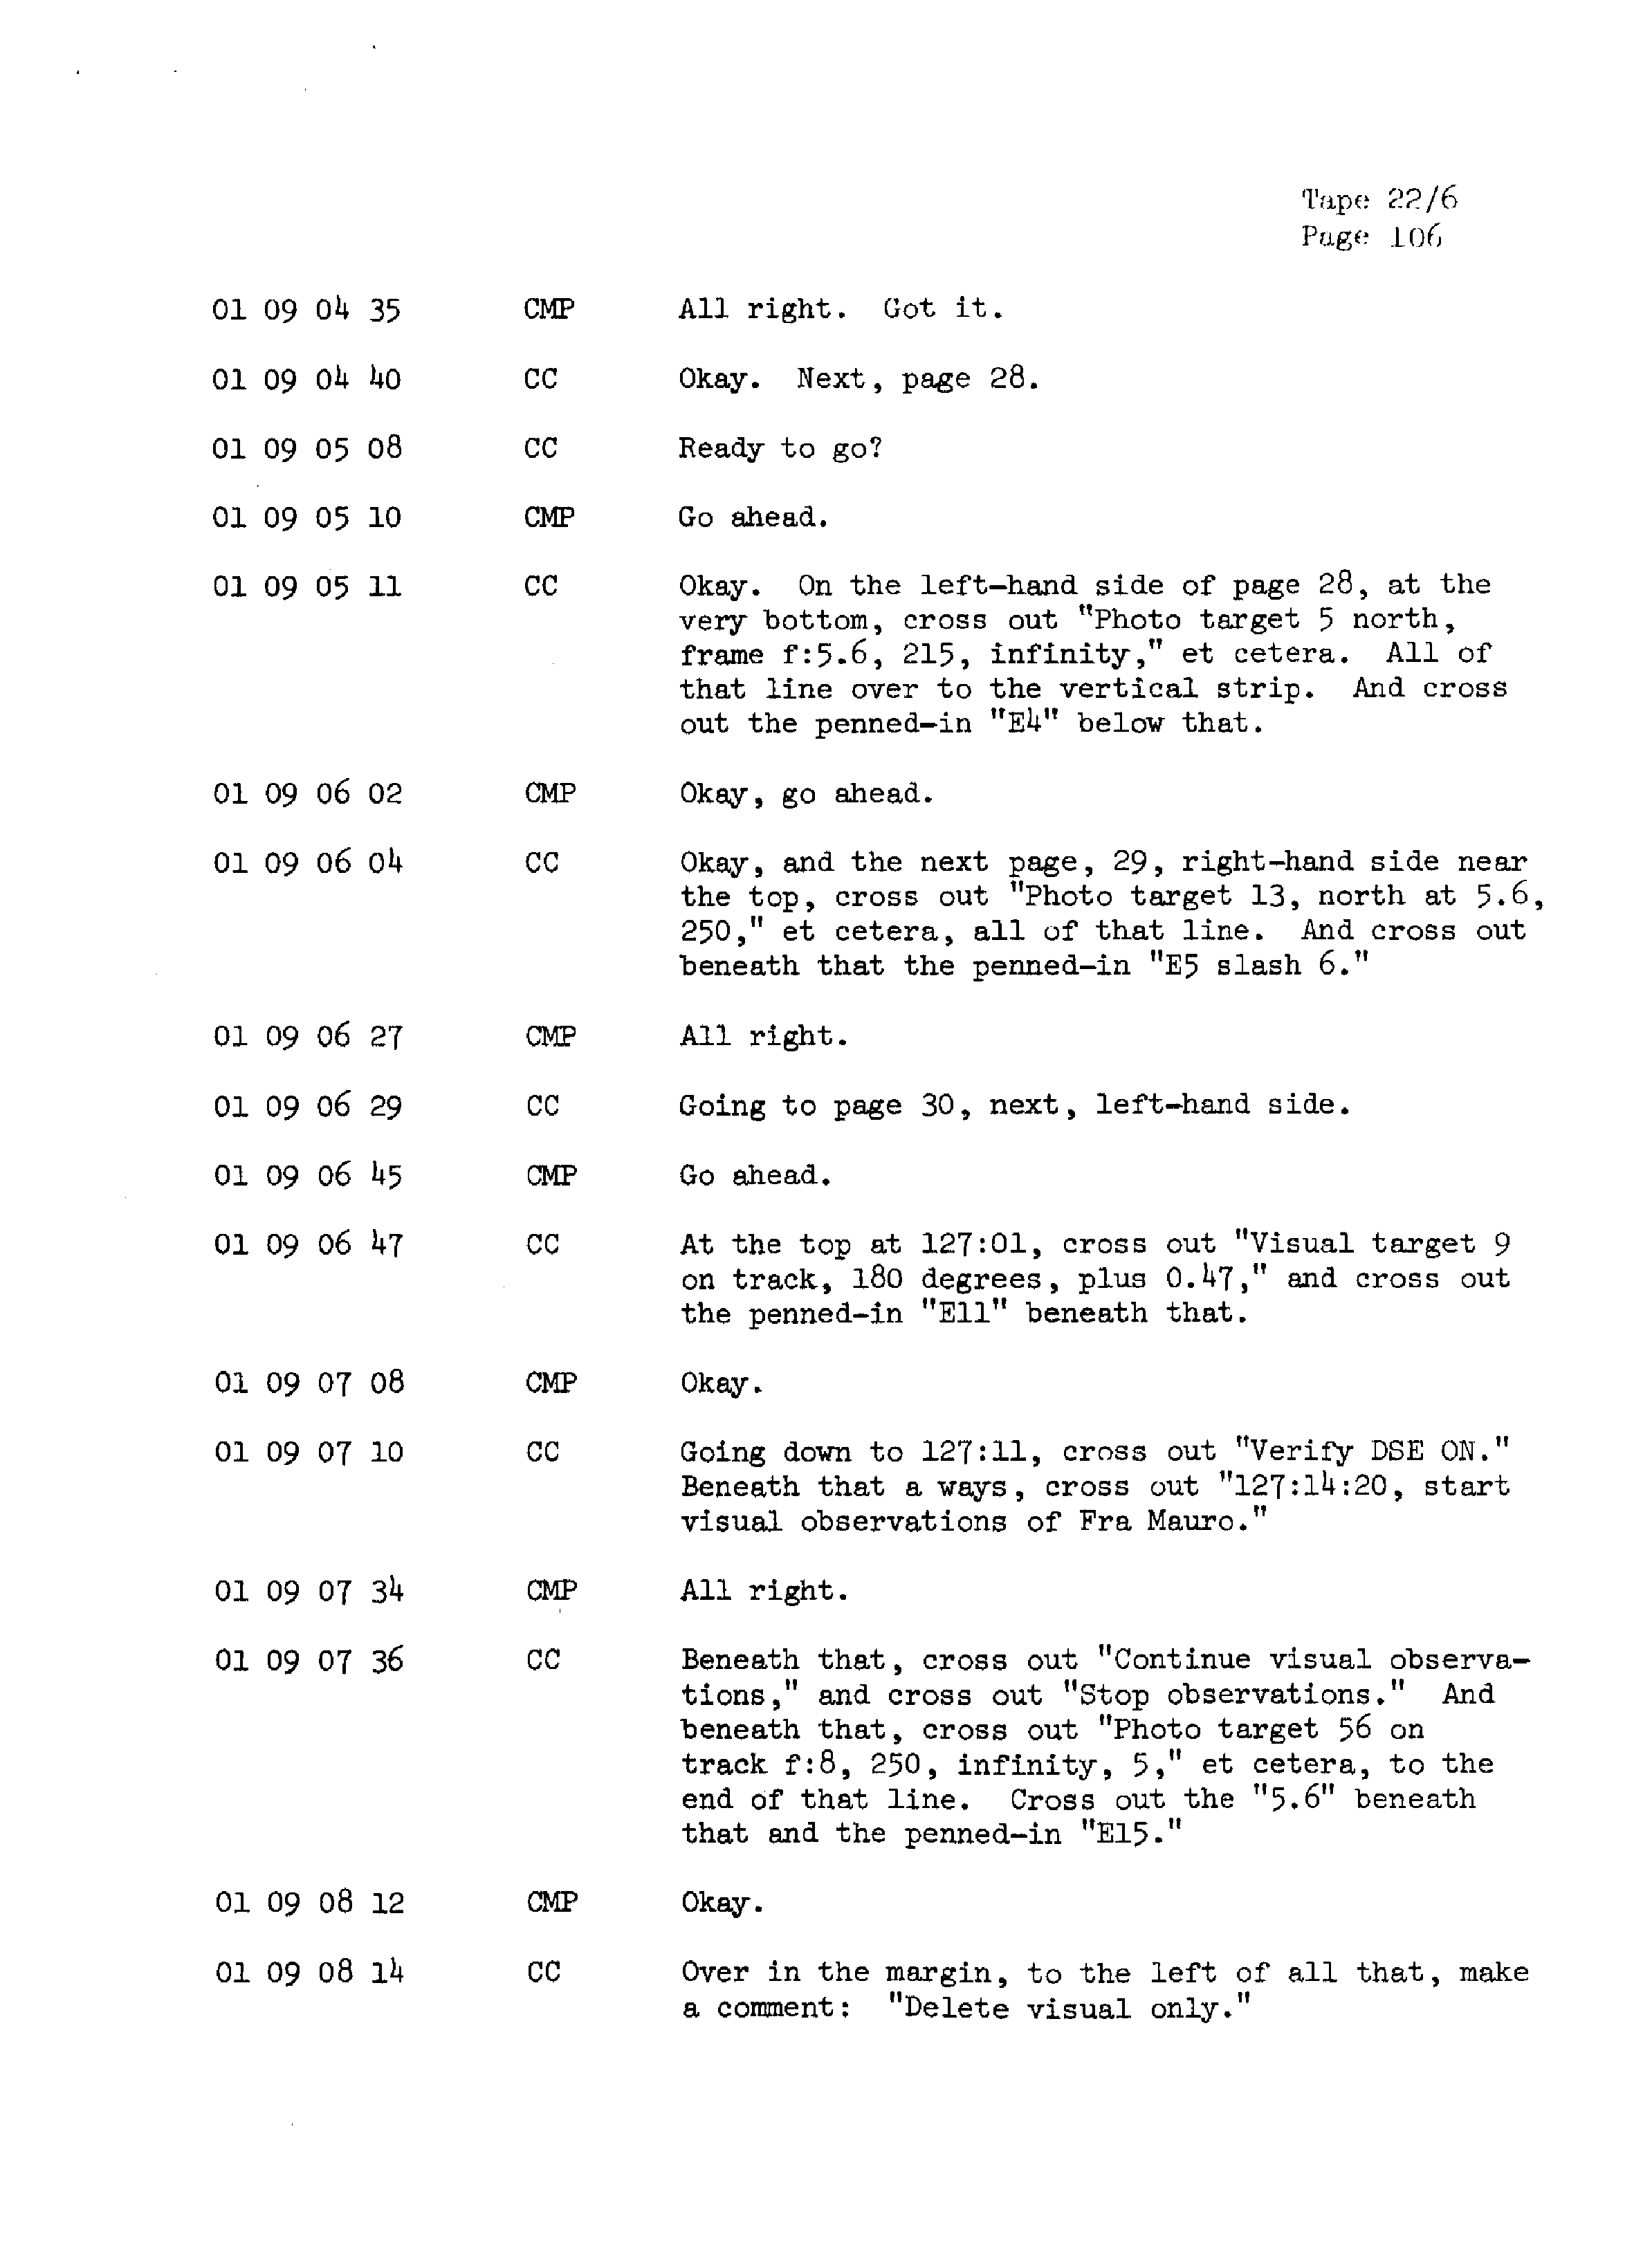 Page 113 of Apollo 13’s original transcript